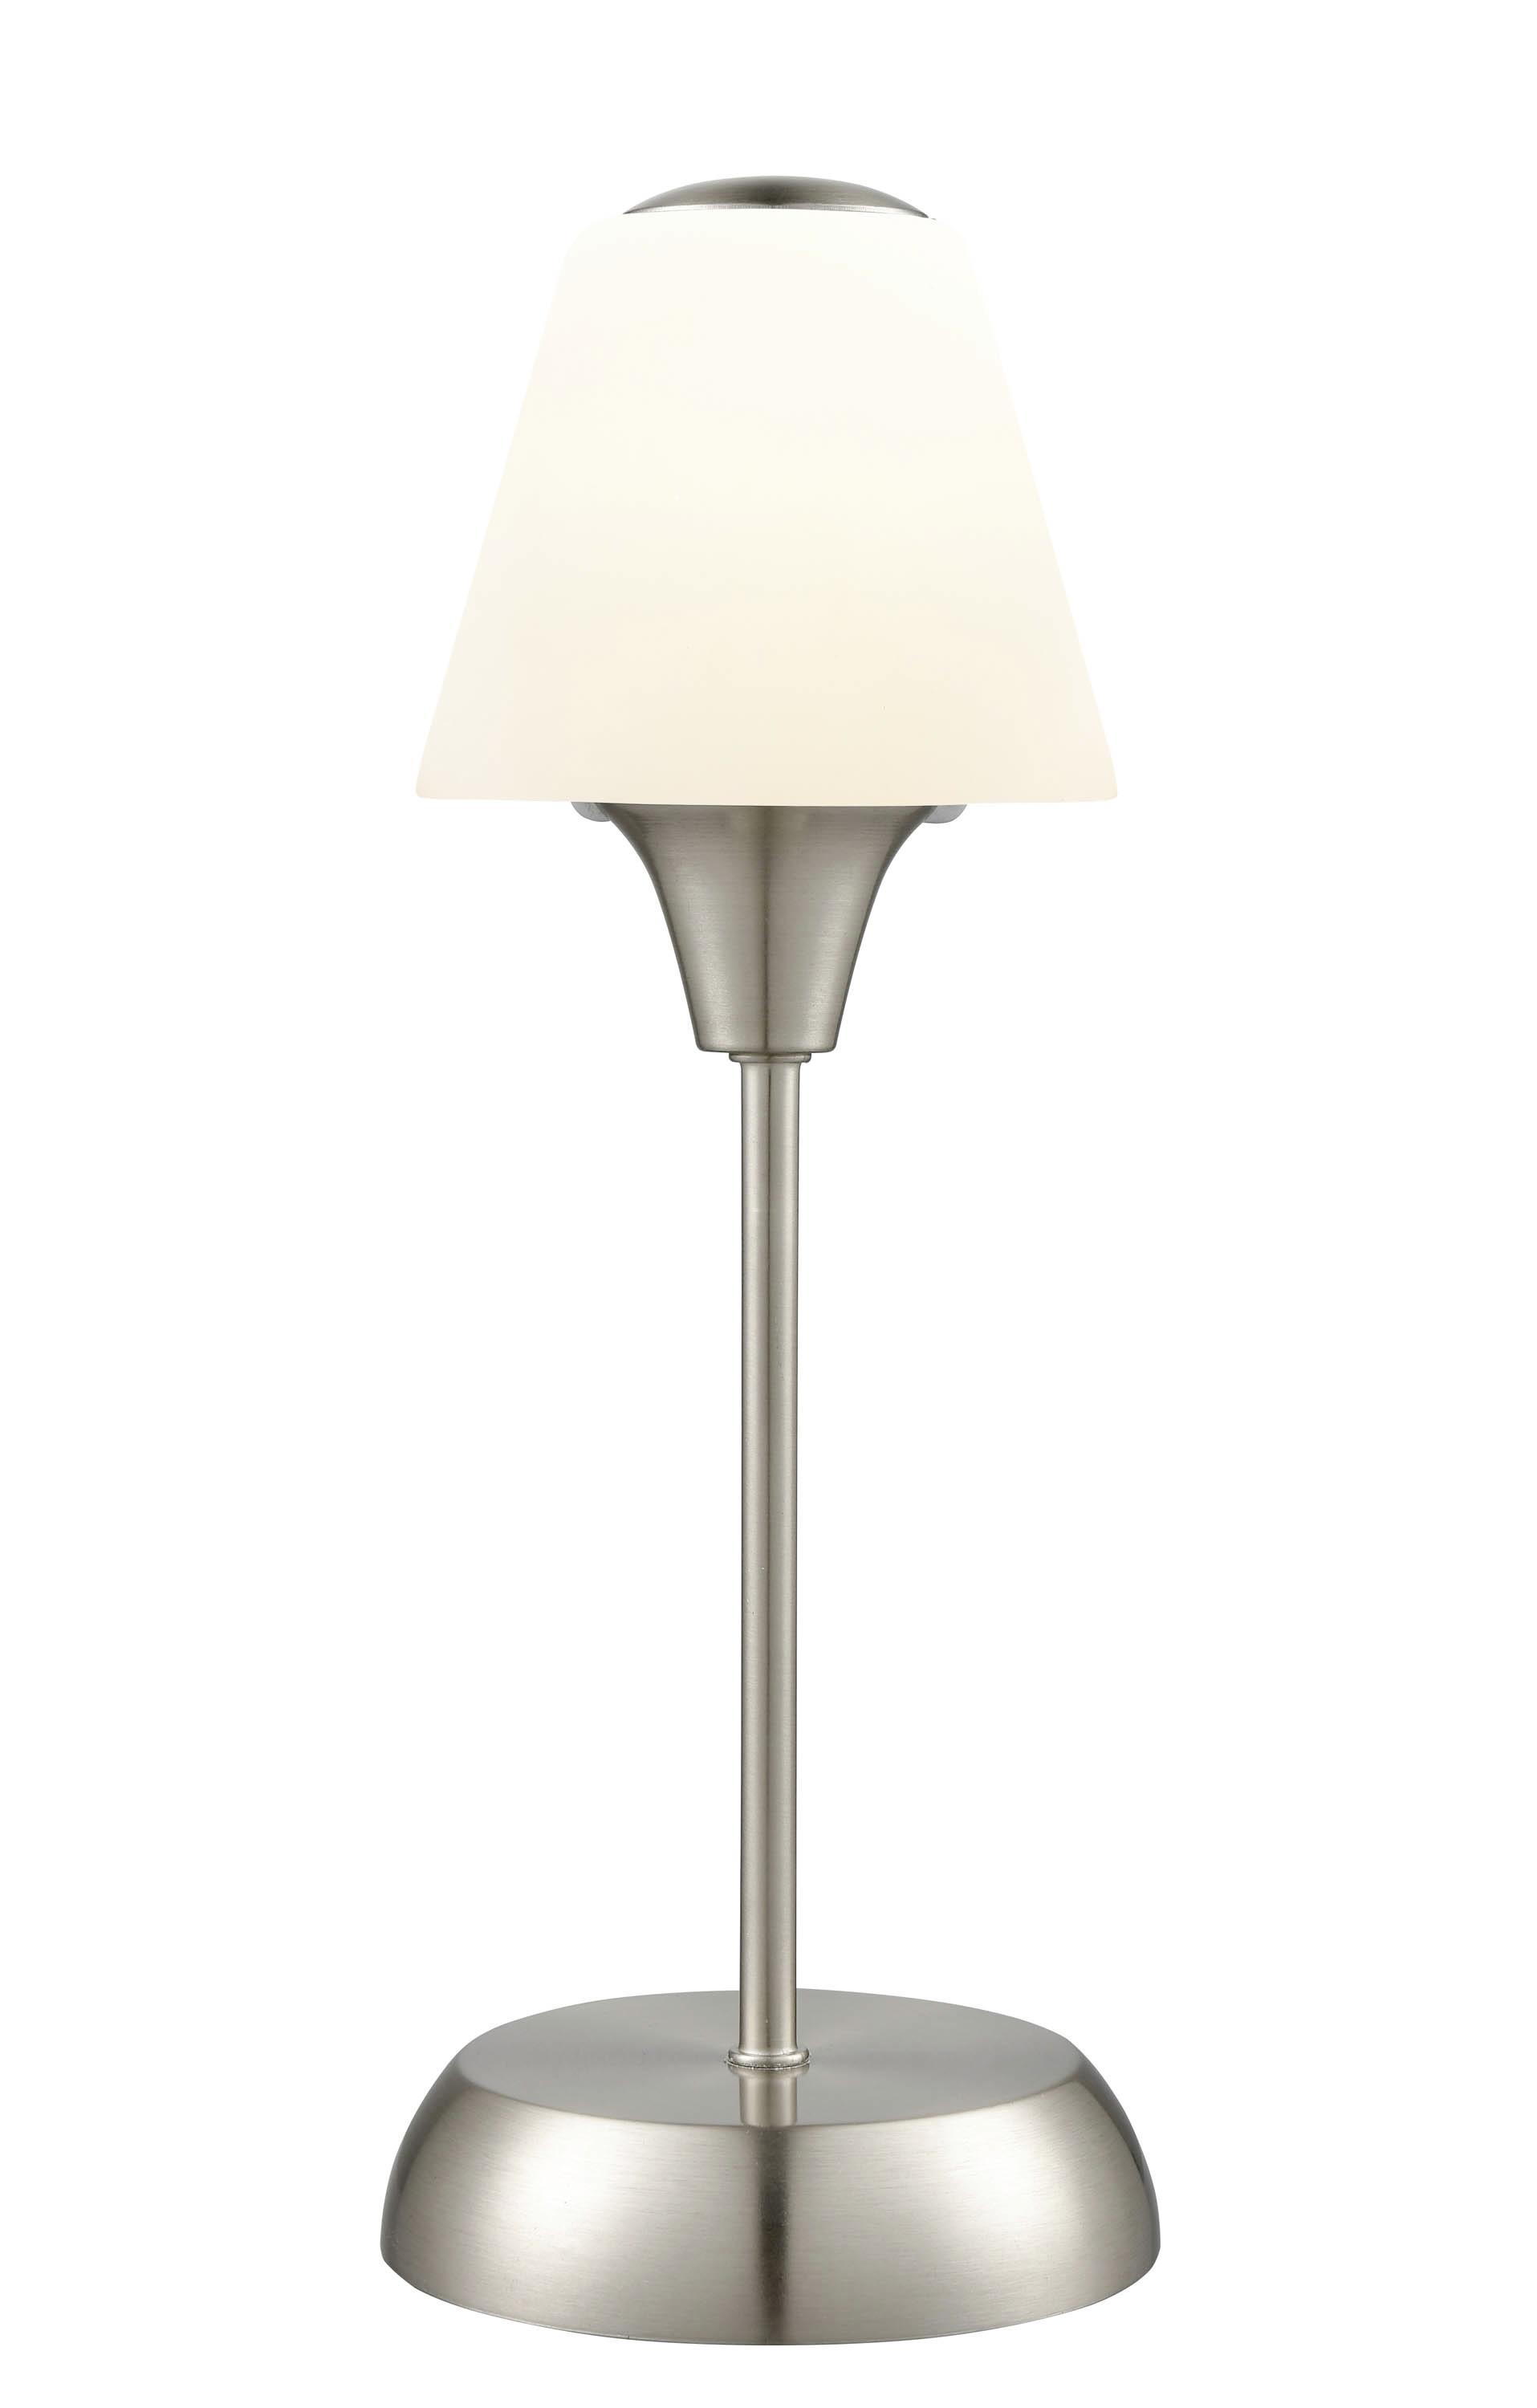 Tischlampe Elena Nickelfarben/ Milchglas mit Touchfunktion - Weiß/Nickelfarben, ROMANTIK / LANDHAUS, Glas/Metall (13/34cm) - James Wood